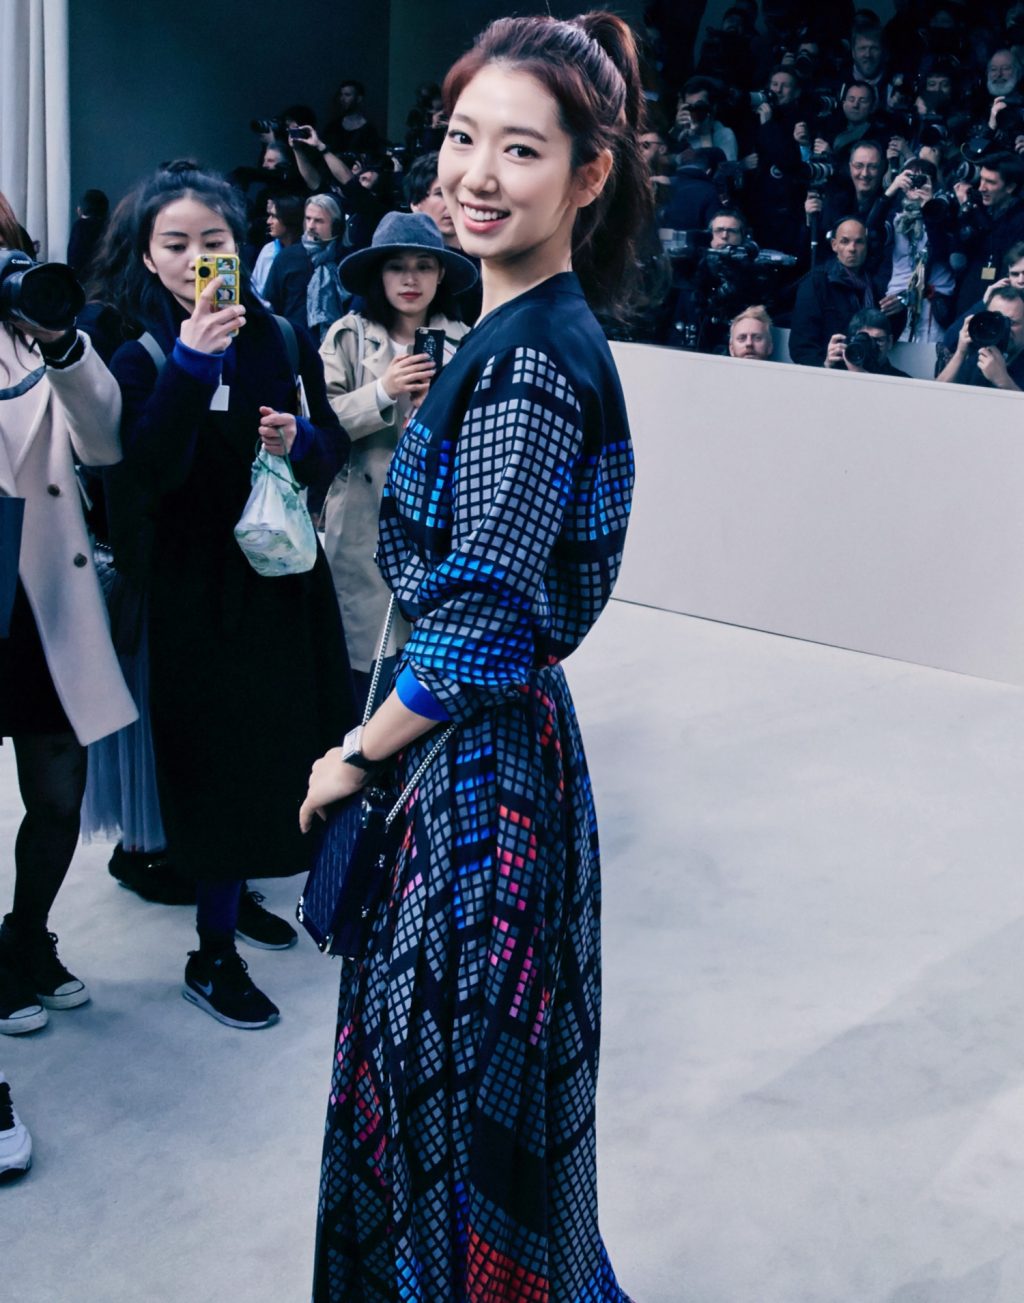 Chiếc váy họa tiết khiến Park Shin Hye hóa thành quý cô thanh lịch và sang trọng - một hình ảnh hiếm gặp của nữ diễn viên thời bấy giờ.